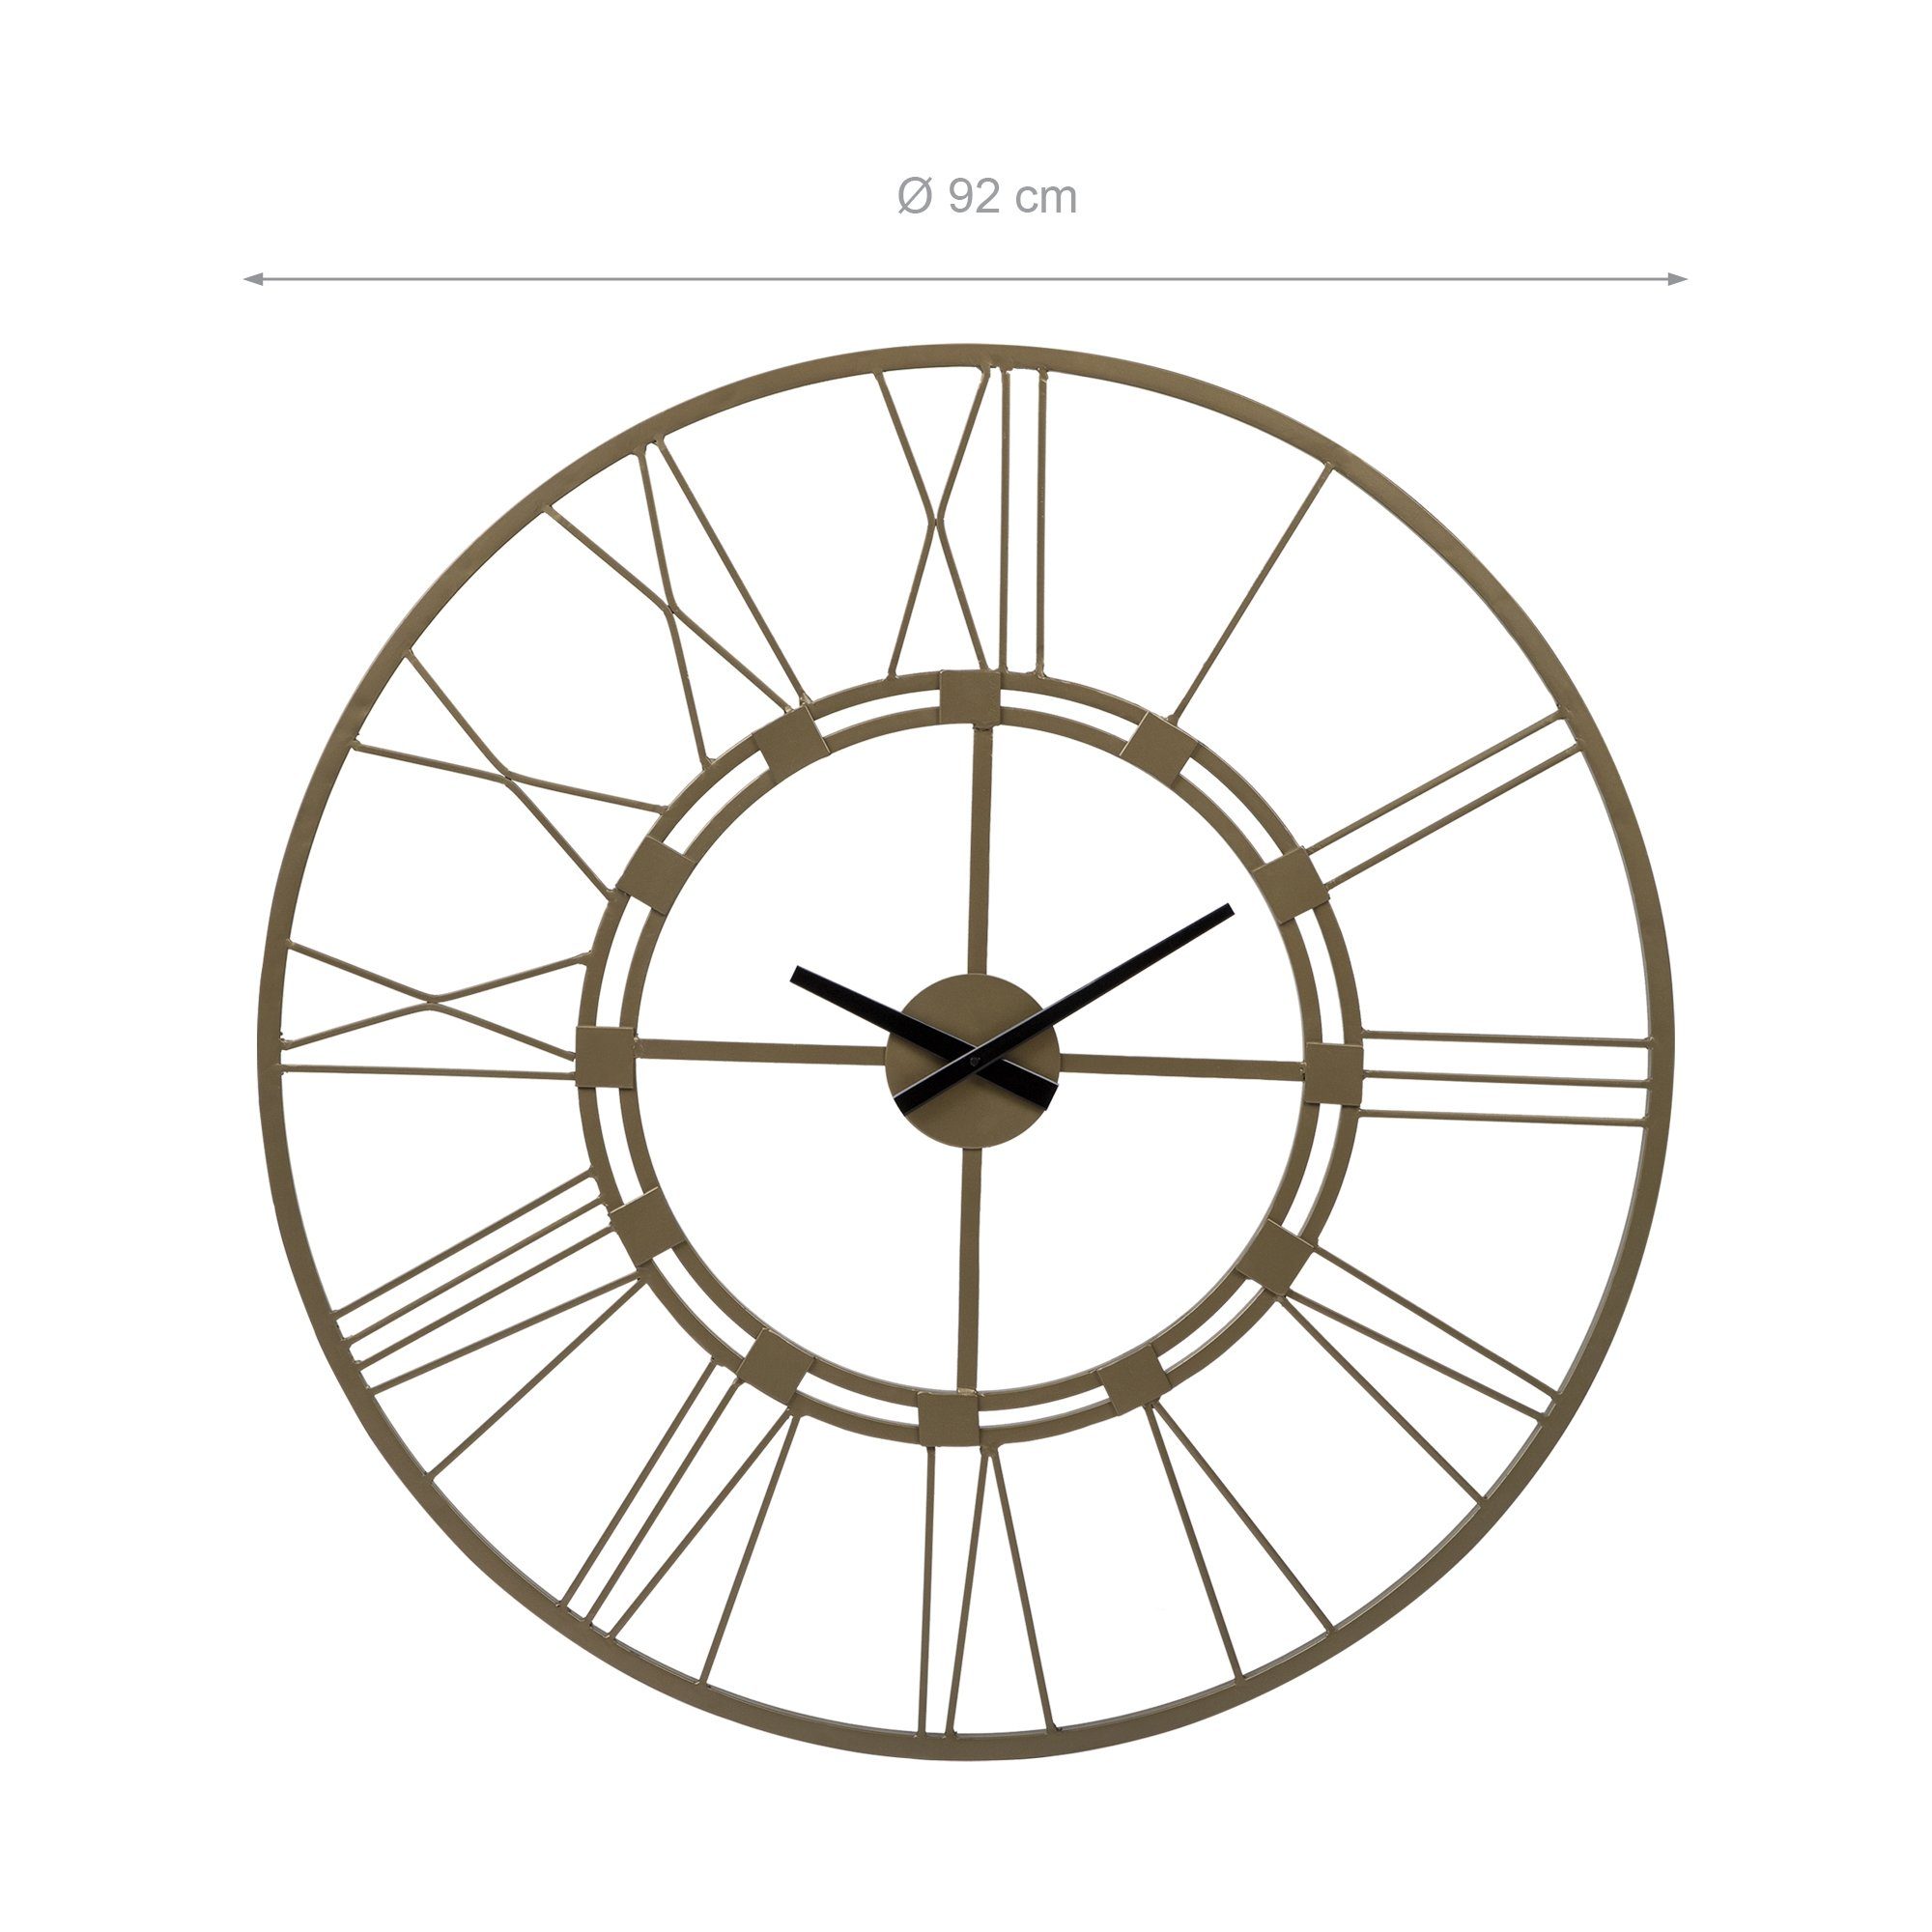 Design (Altgold Unikat Wanduhr Eisen Uhr Uhr rund Dekorative Dekouhr Stockholm handgefertigt WOMO-DESIGN Ø85cm Vintage-Stil) im